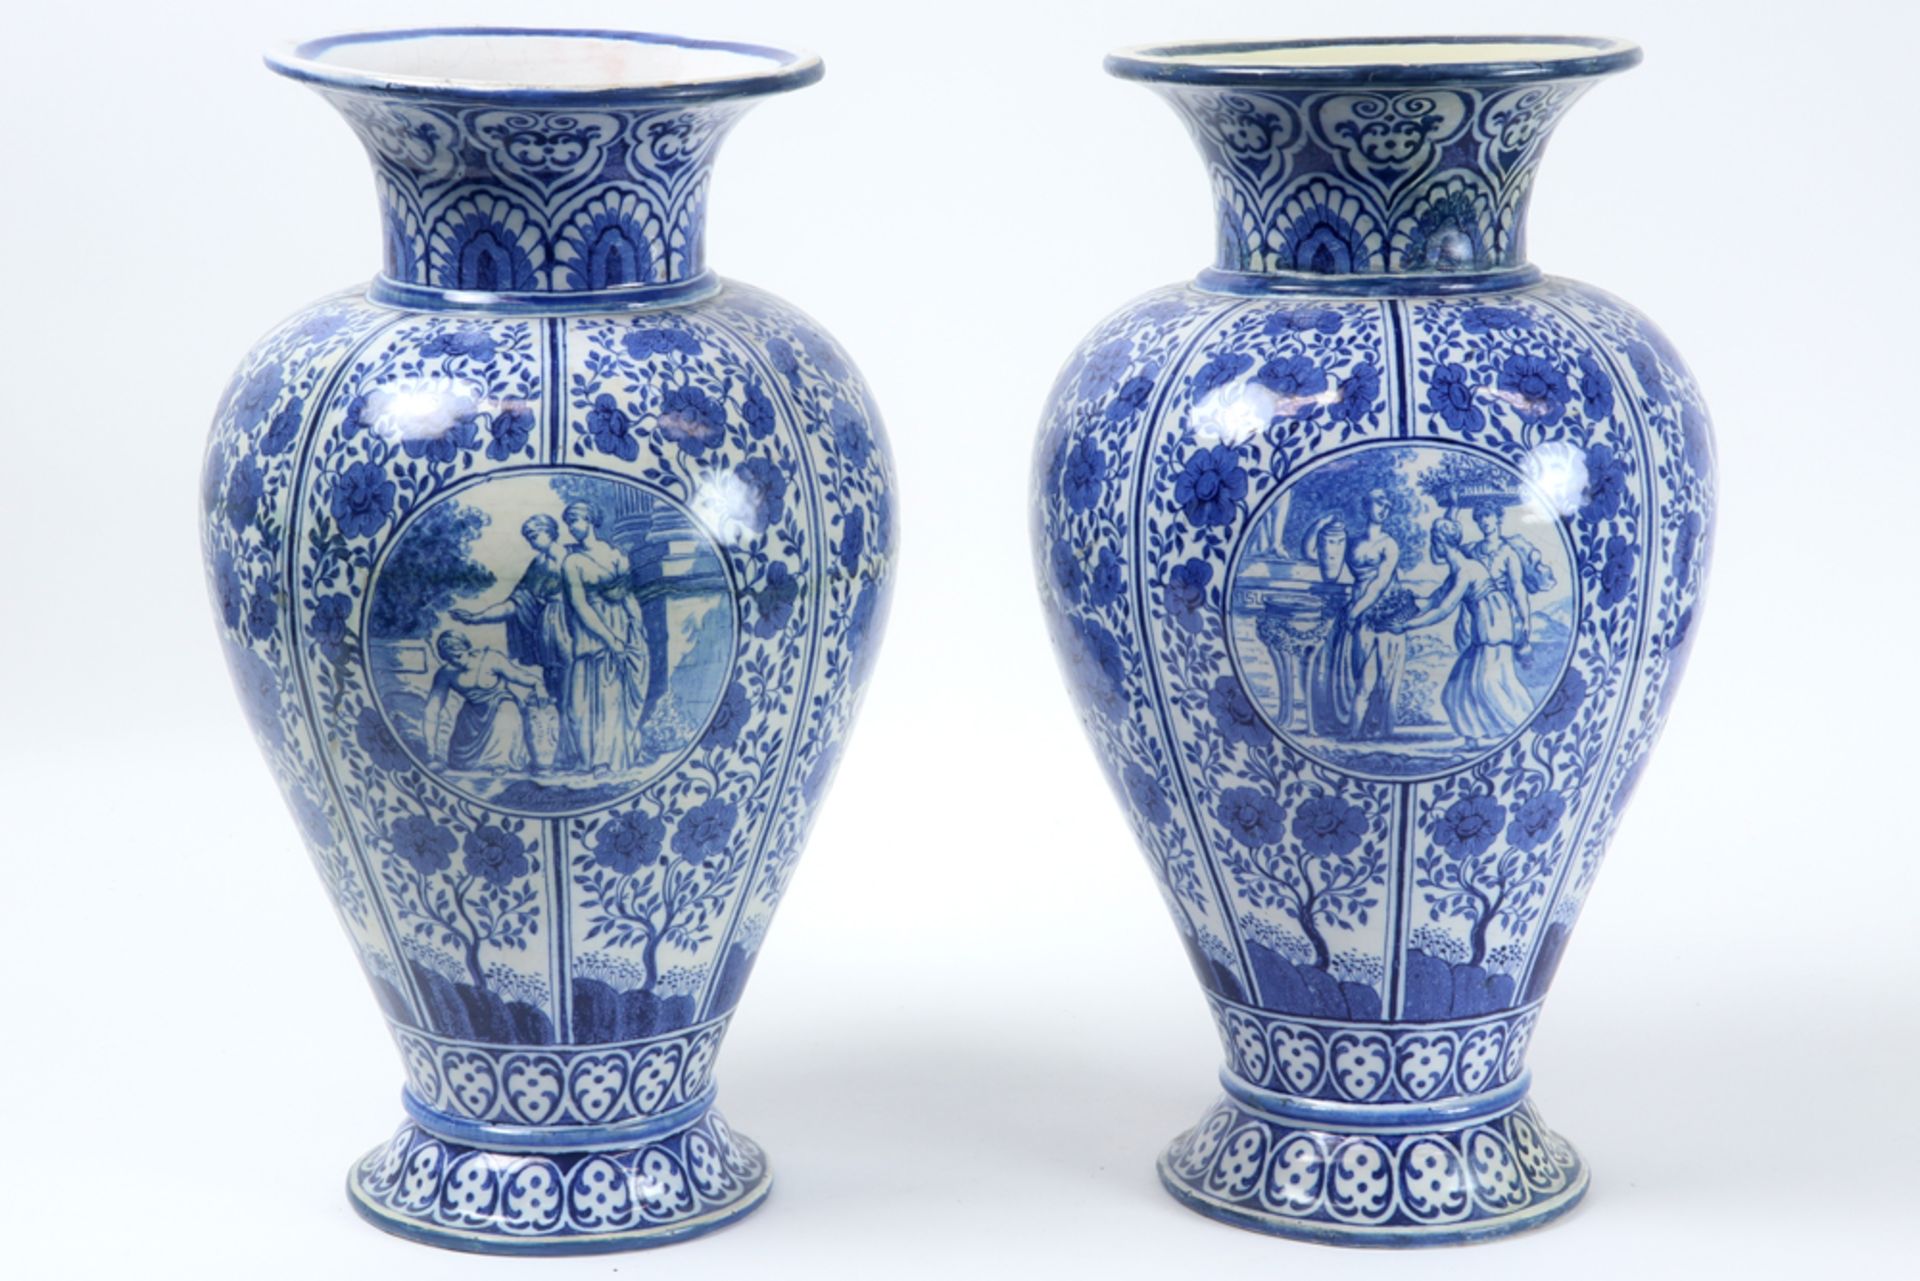 pair of antique vases in ceramic with a blue-white decor - signed C.L. Waegeneer || C.L WAEGENEER